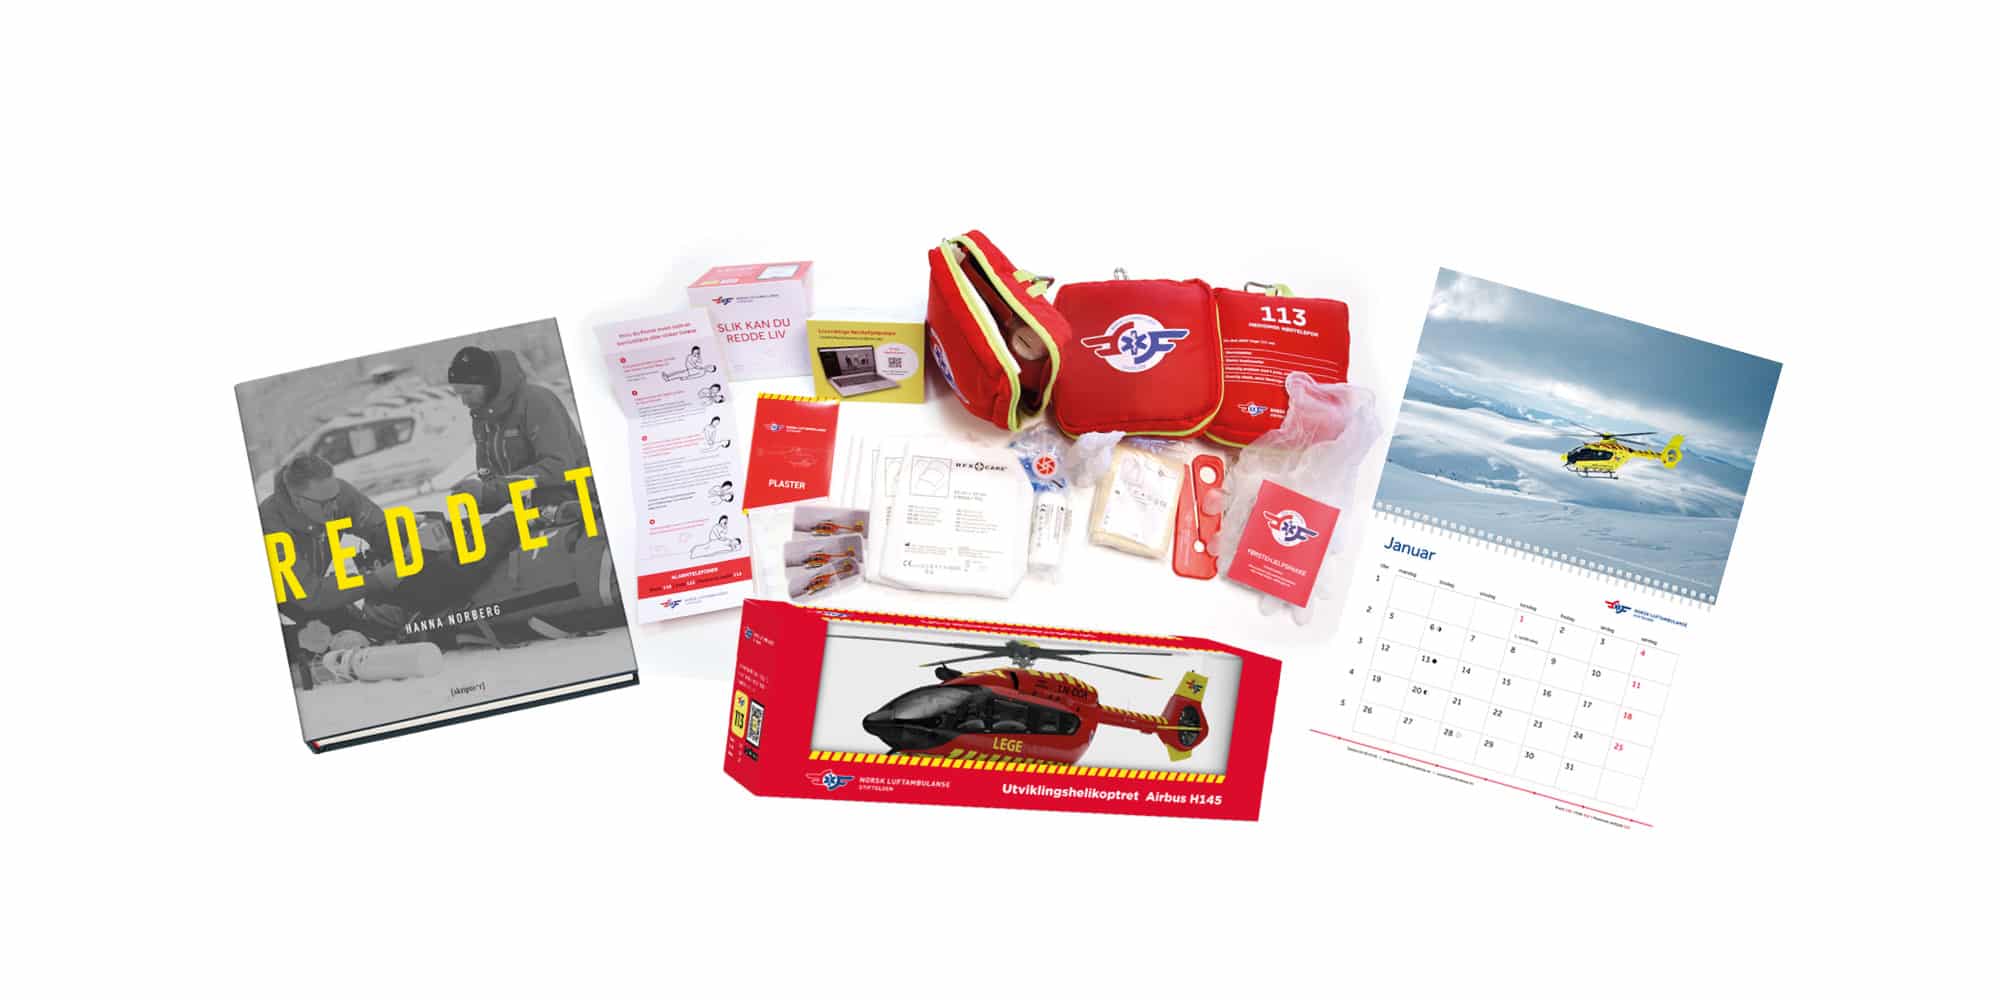 Modellhelikopter, førstehjelpspakke, kalender og jubileumsboken Reddet